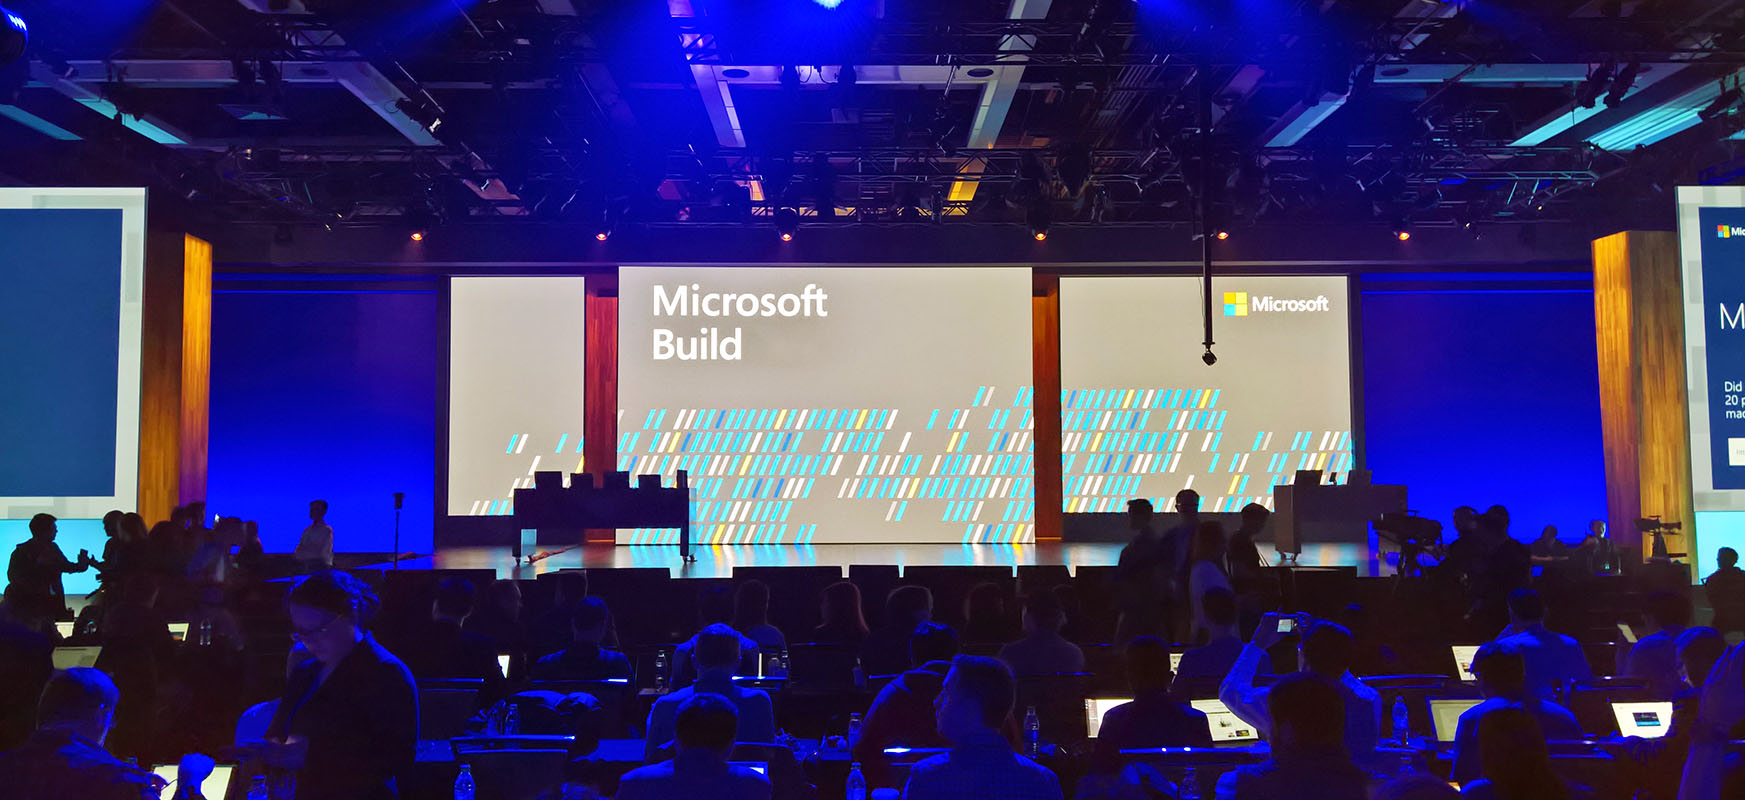 Microsoft-en konferentzia garrantzitsuena bertan behera utzi da. Build 2020 "gertaera birtuala" izango da